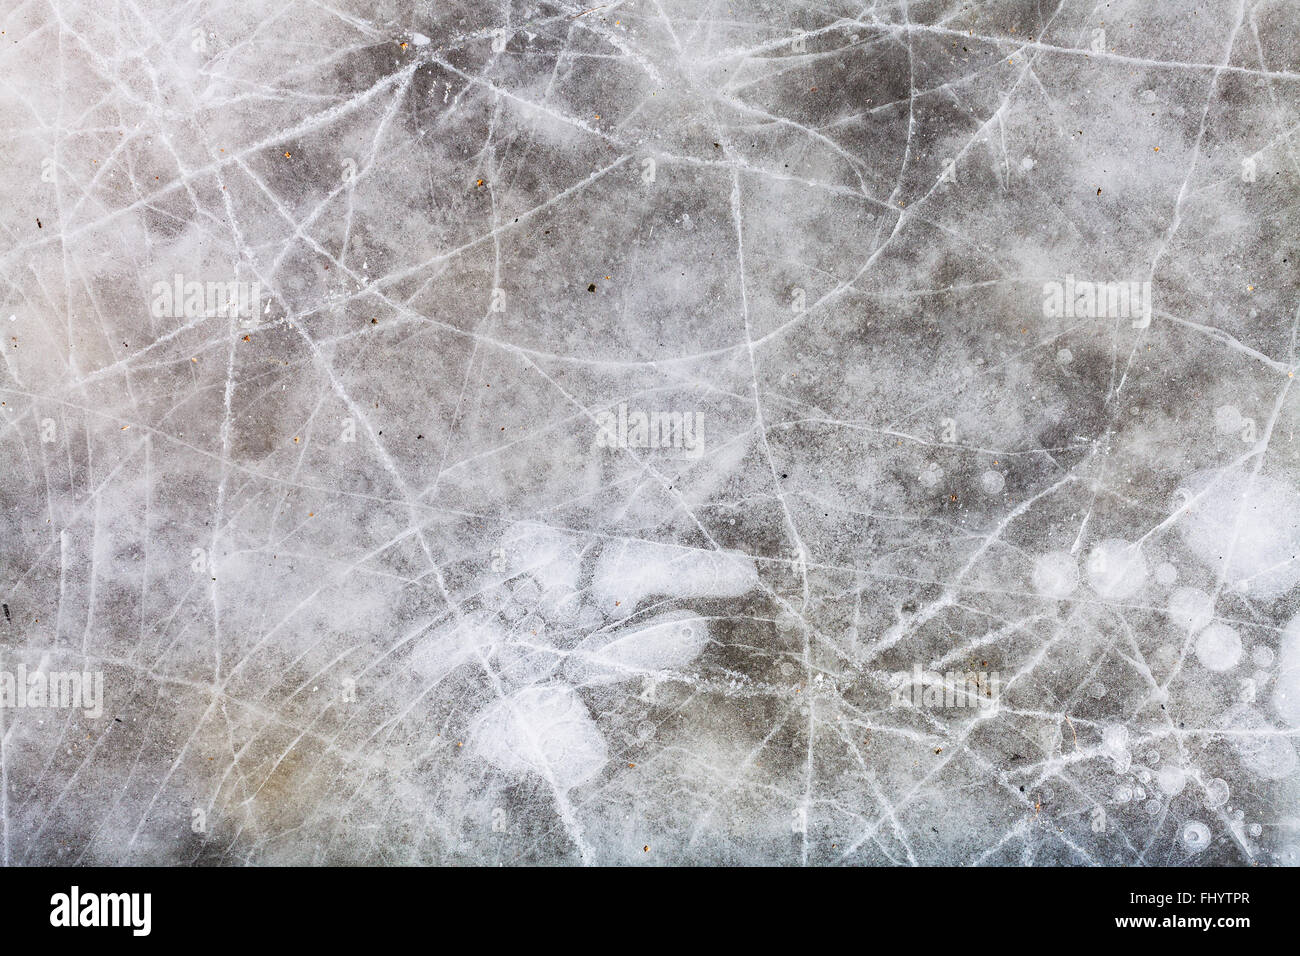 natürlichen Hintergrund - gestoßenem Eis auf gefrorenen Pfütze in kalten Wintertag Stockfoto